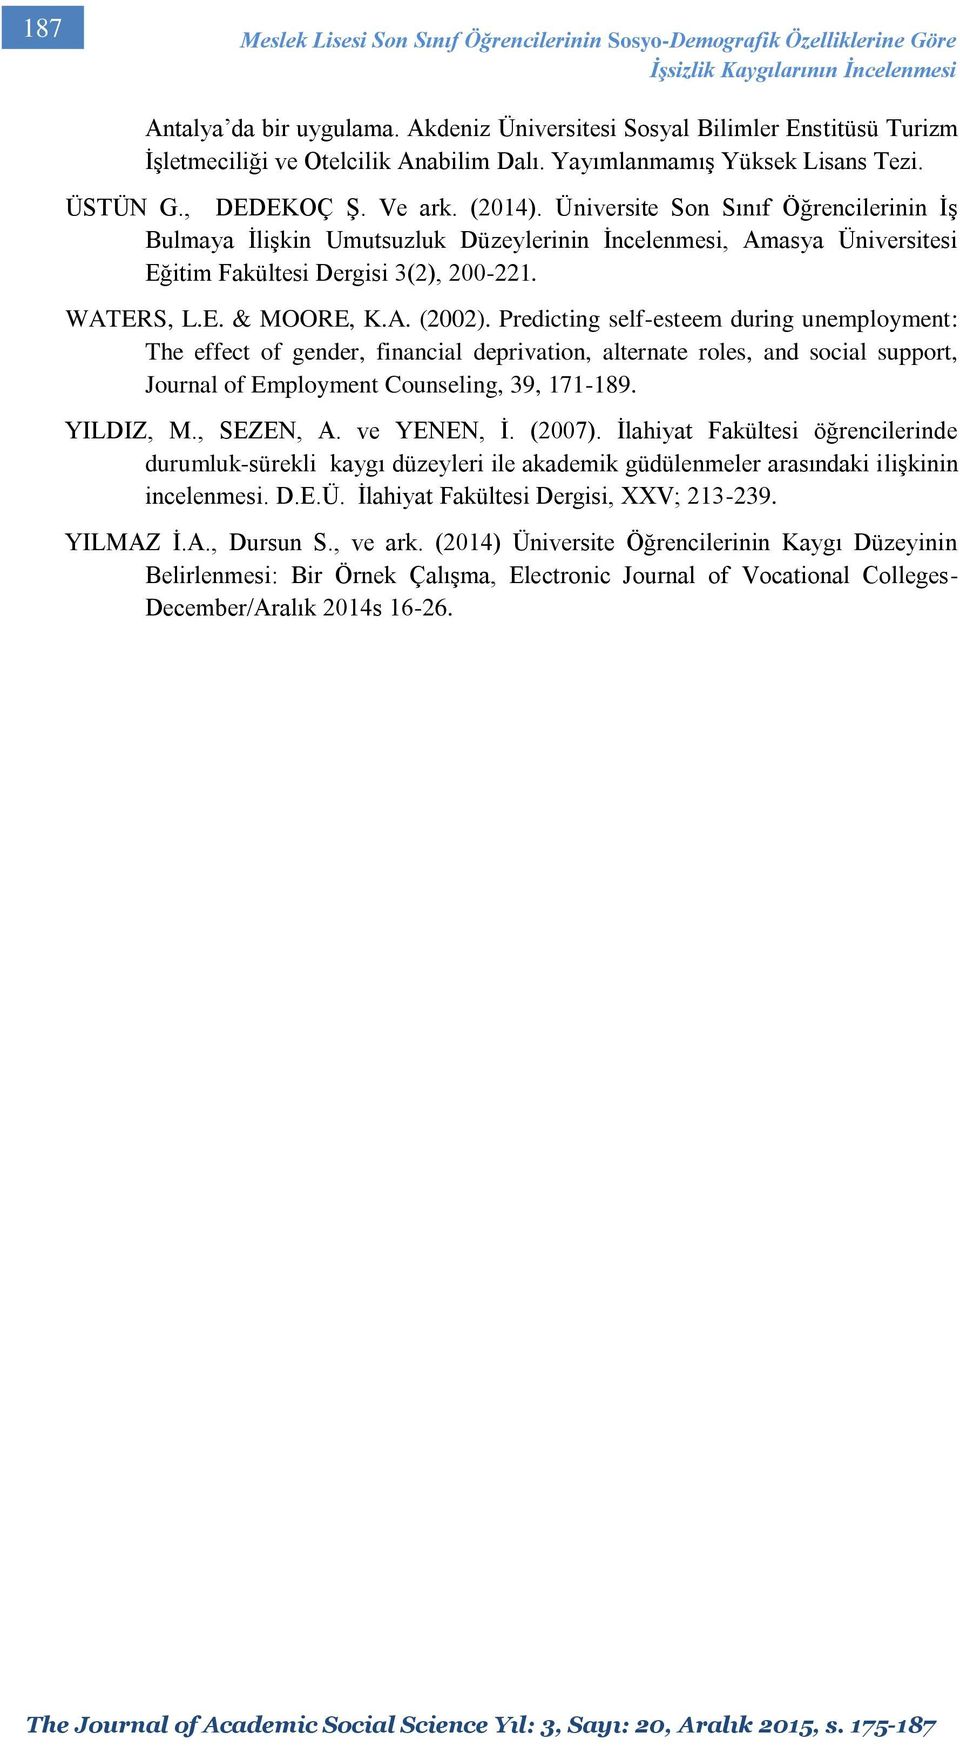 Üniversite Son Sınıf Öğrencilerinin İş Bulmaya İlişkin Umutsuzluk Düzeylerinin İncelenmesi, Amasya Üniversitesi Eğitim Fakültesi Dergisi 3(2), 200-221. WATERS, L.E. & MOORE, K.A. (2002).